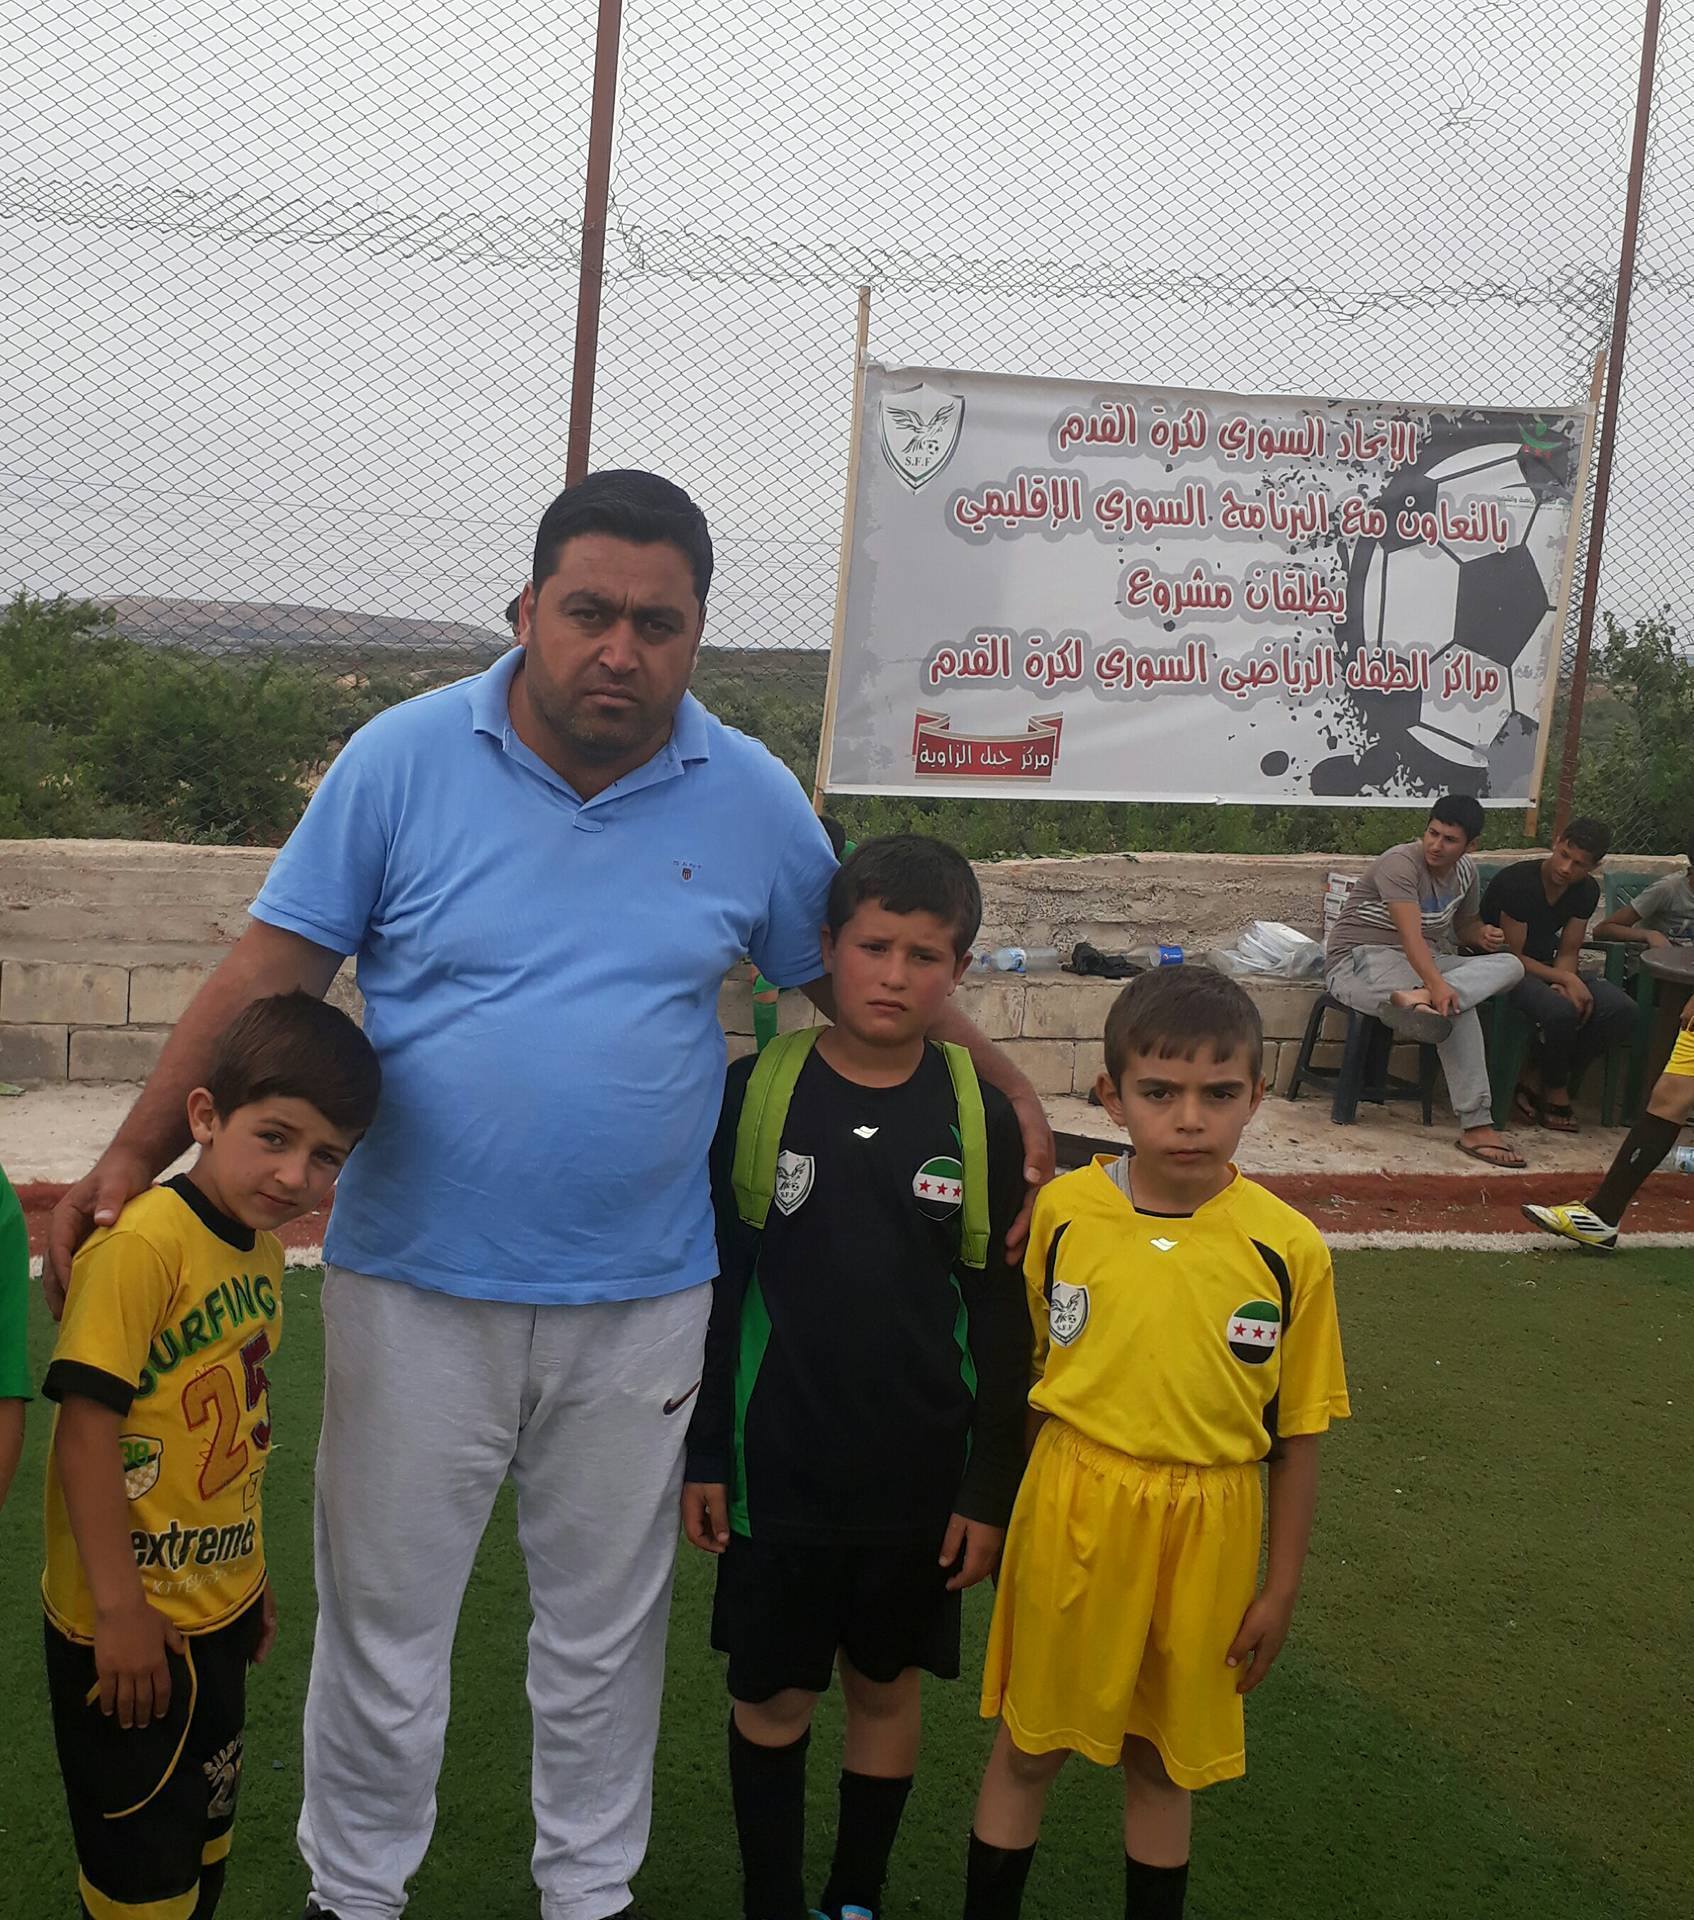 رئيس اتحاد كرة القدم "الحر" في إدلب نادر الأطرش مع أطفال ضمن مشروع الطفل الرياضي السوري - 2017 (الهيئة السورية للرياضة)